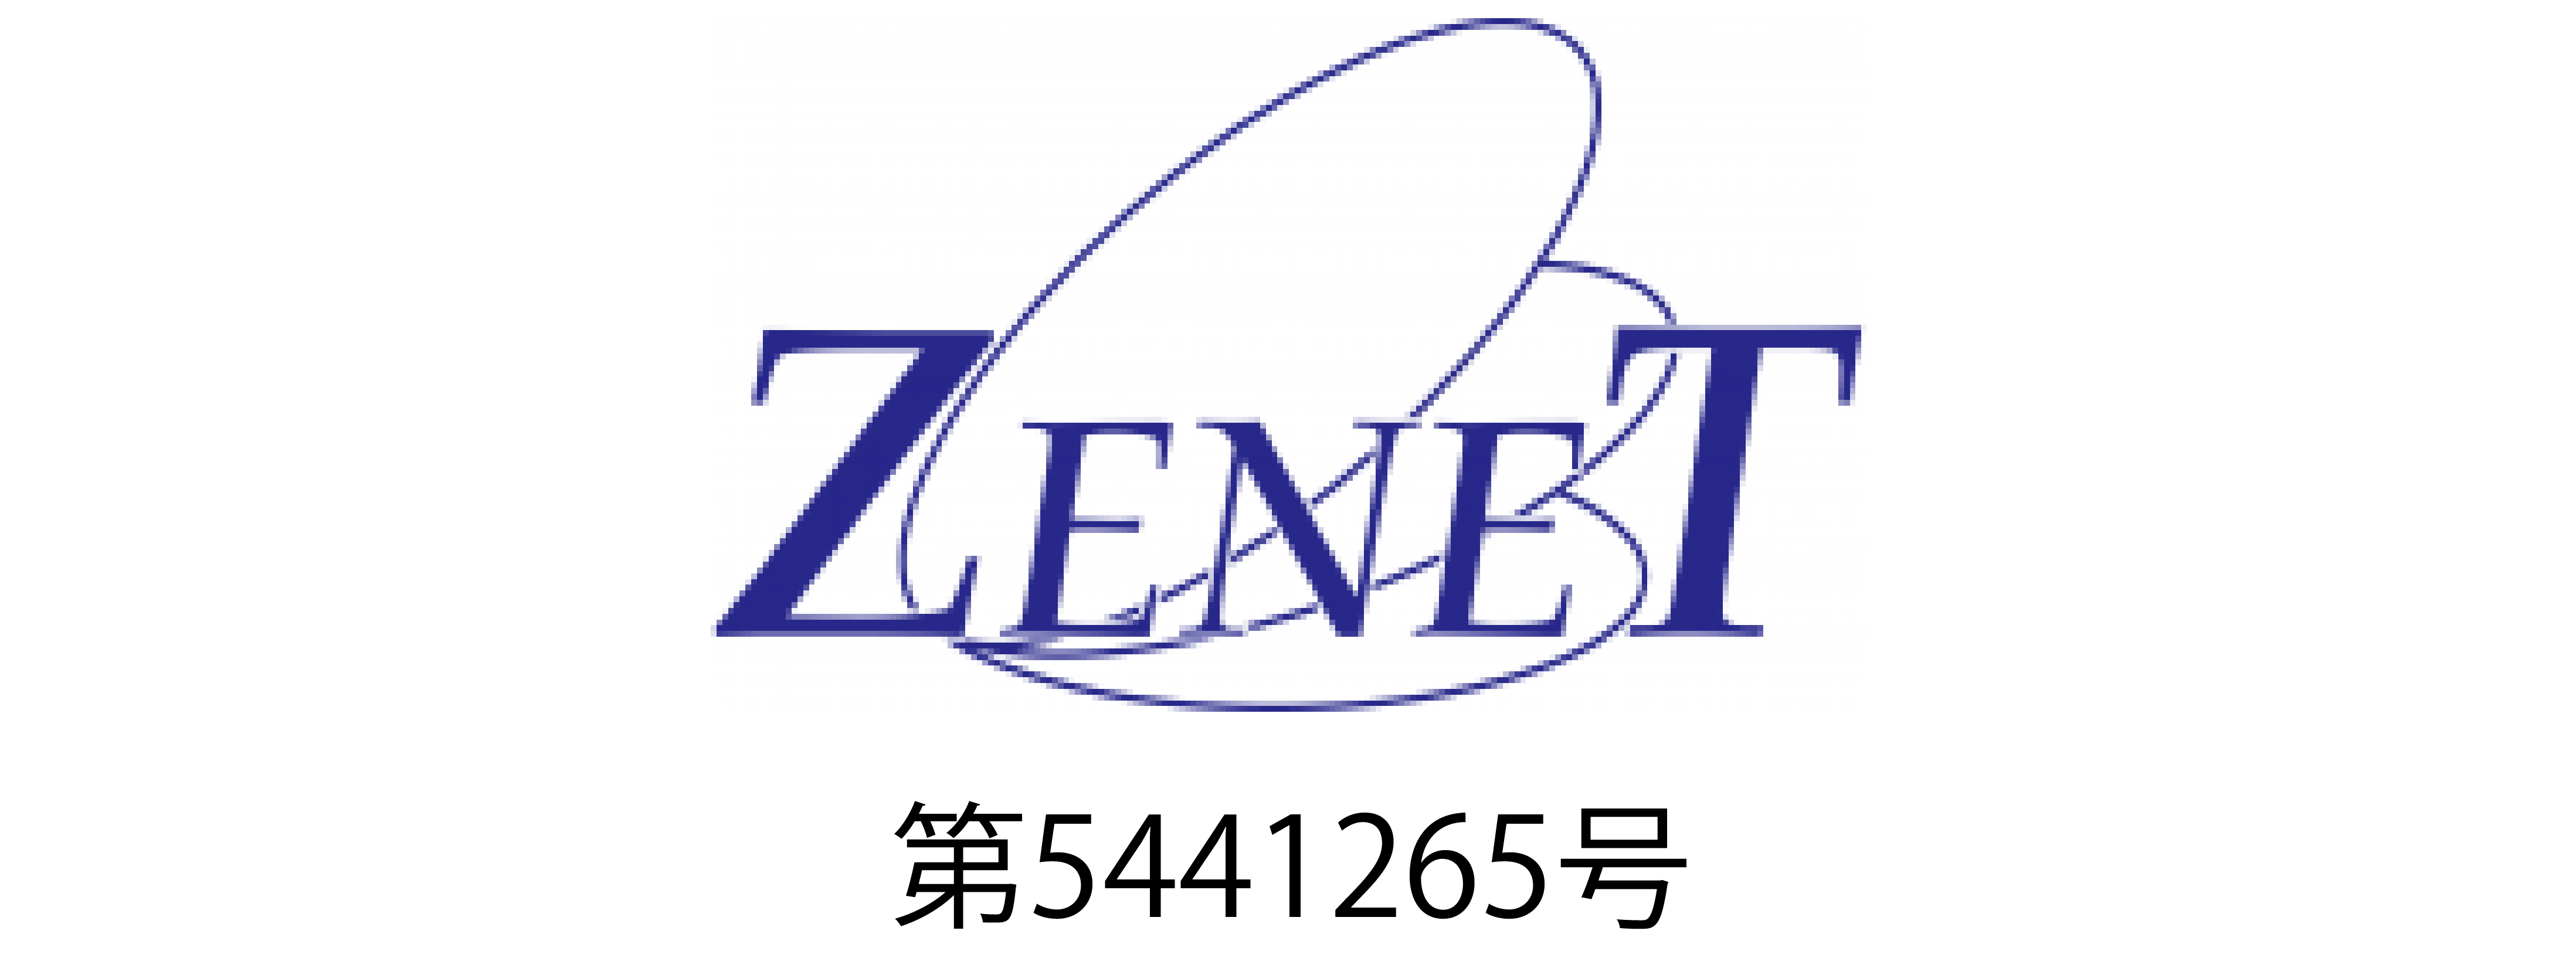 zenet-logo